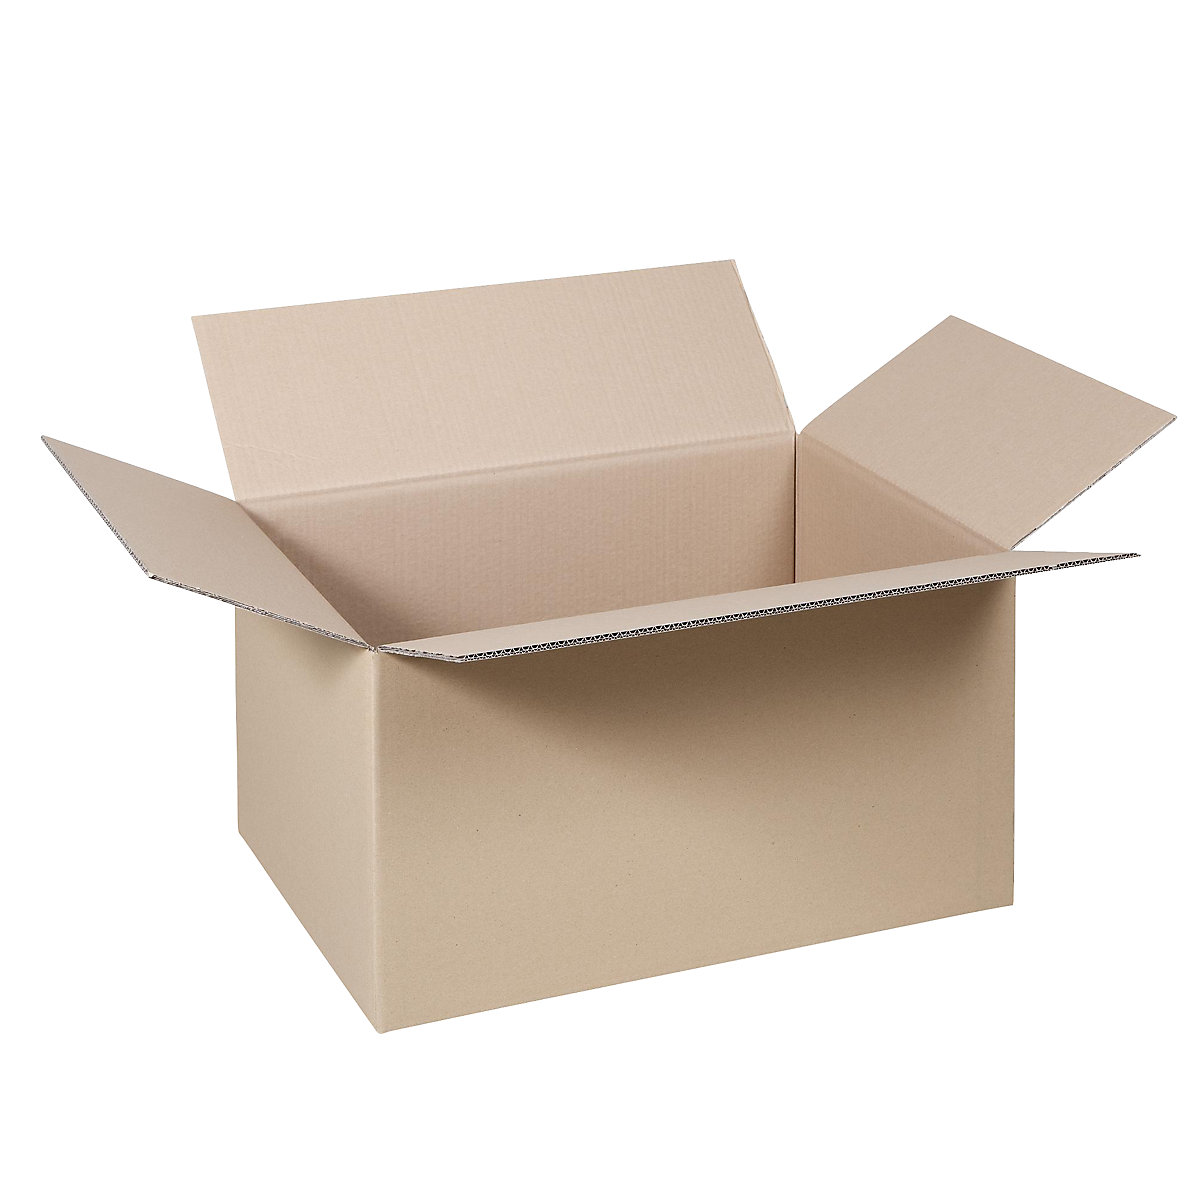 Cutie de carton pliantă, FEFCO 0201, cu 2 straturi de carton ondulat, dimensiuni interioare 480 x 330 x 300 mm, 2.3 BC, amb. 50 buc.-6